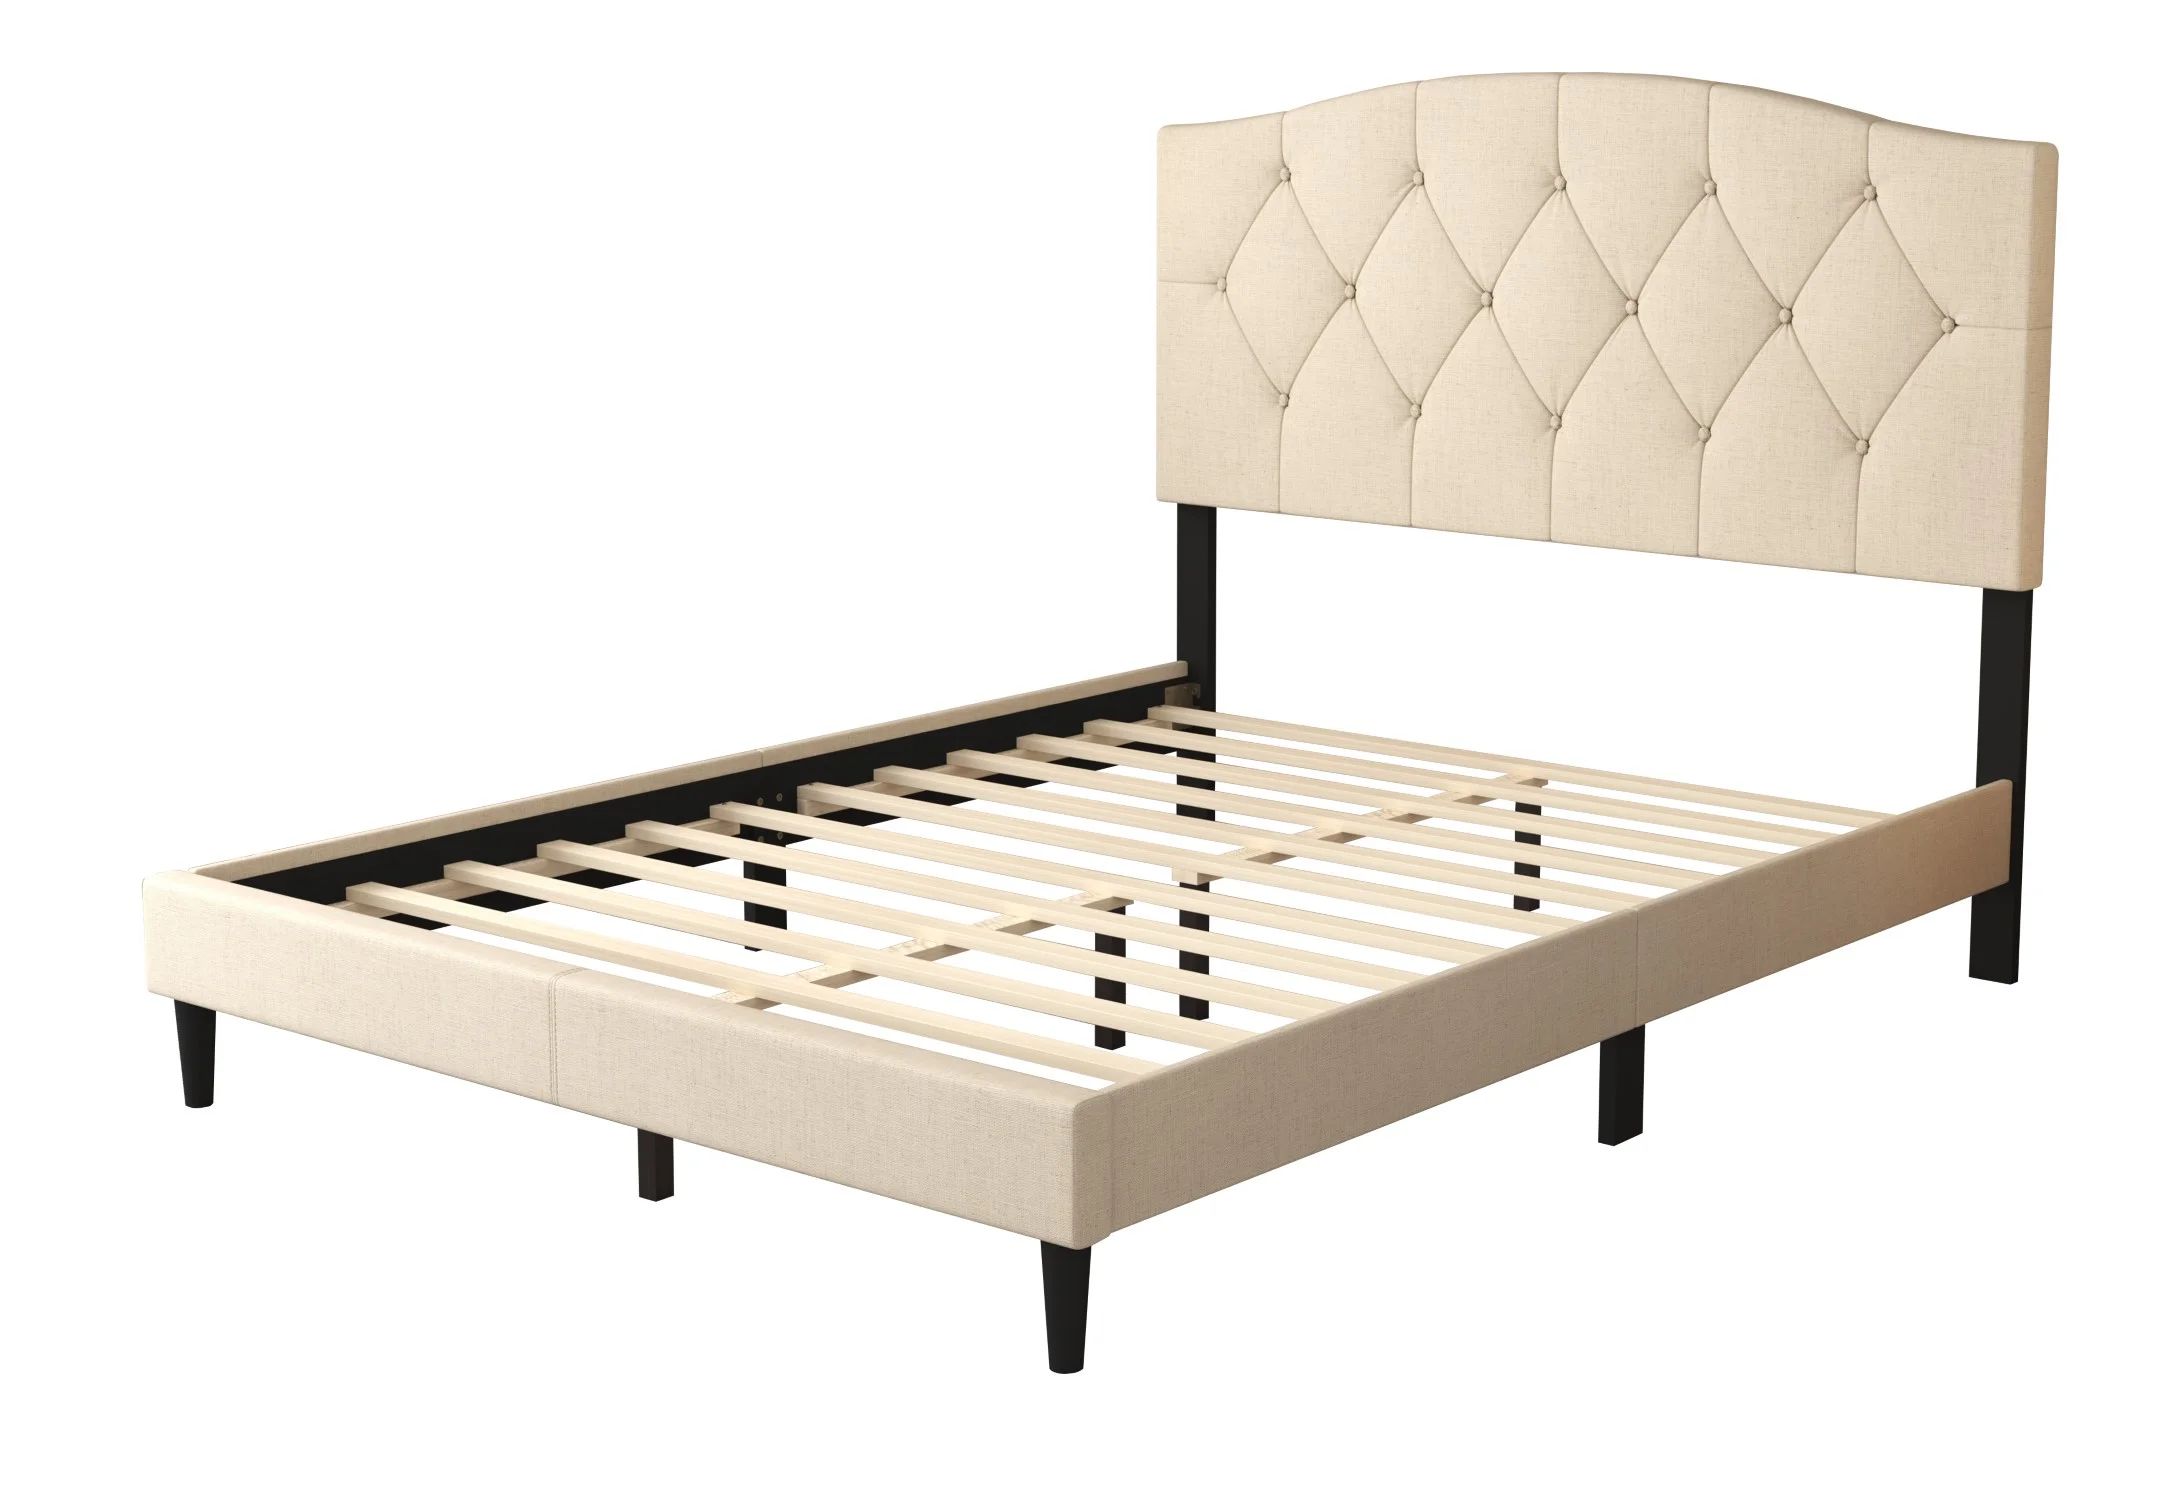 Arndt Tufted Upholstered Low Profile Platform Bed | Wayfair North America